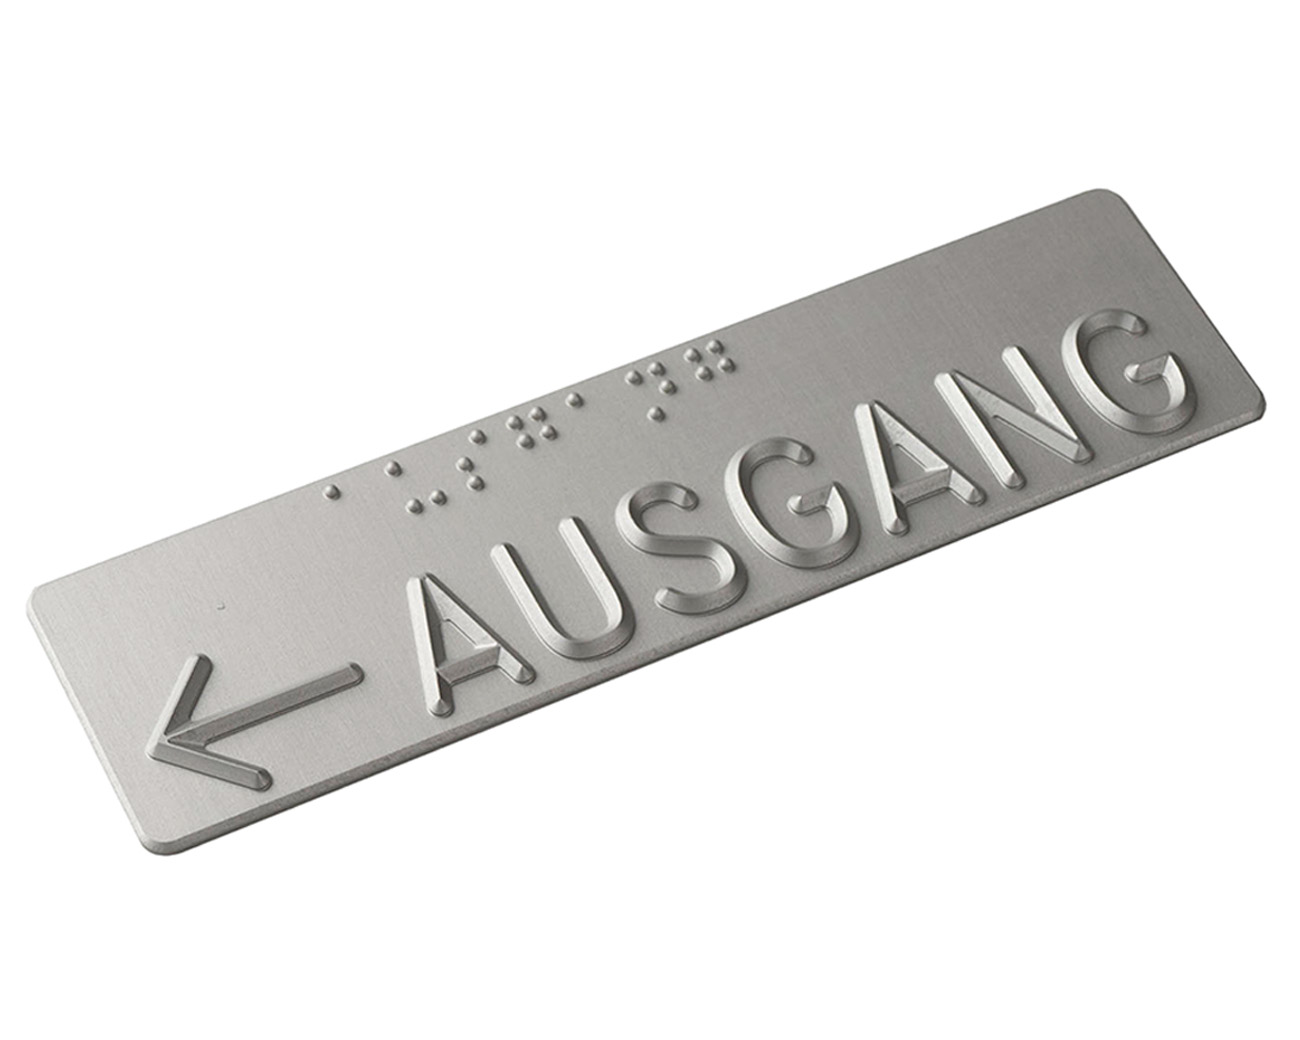 Handlaufschild flach Aluminium silber eloxiert gefräst nach DIN32986 AUSGANG / NOTAUSGANG